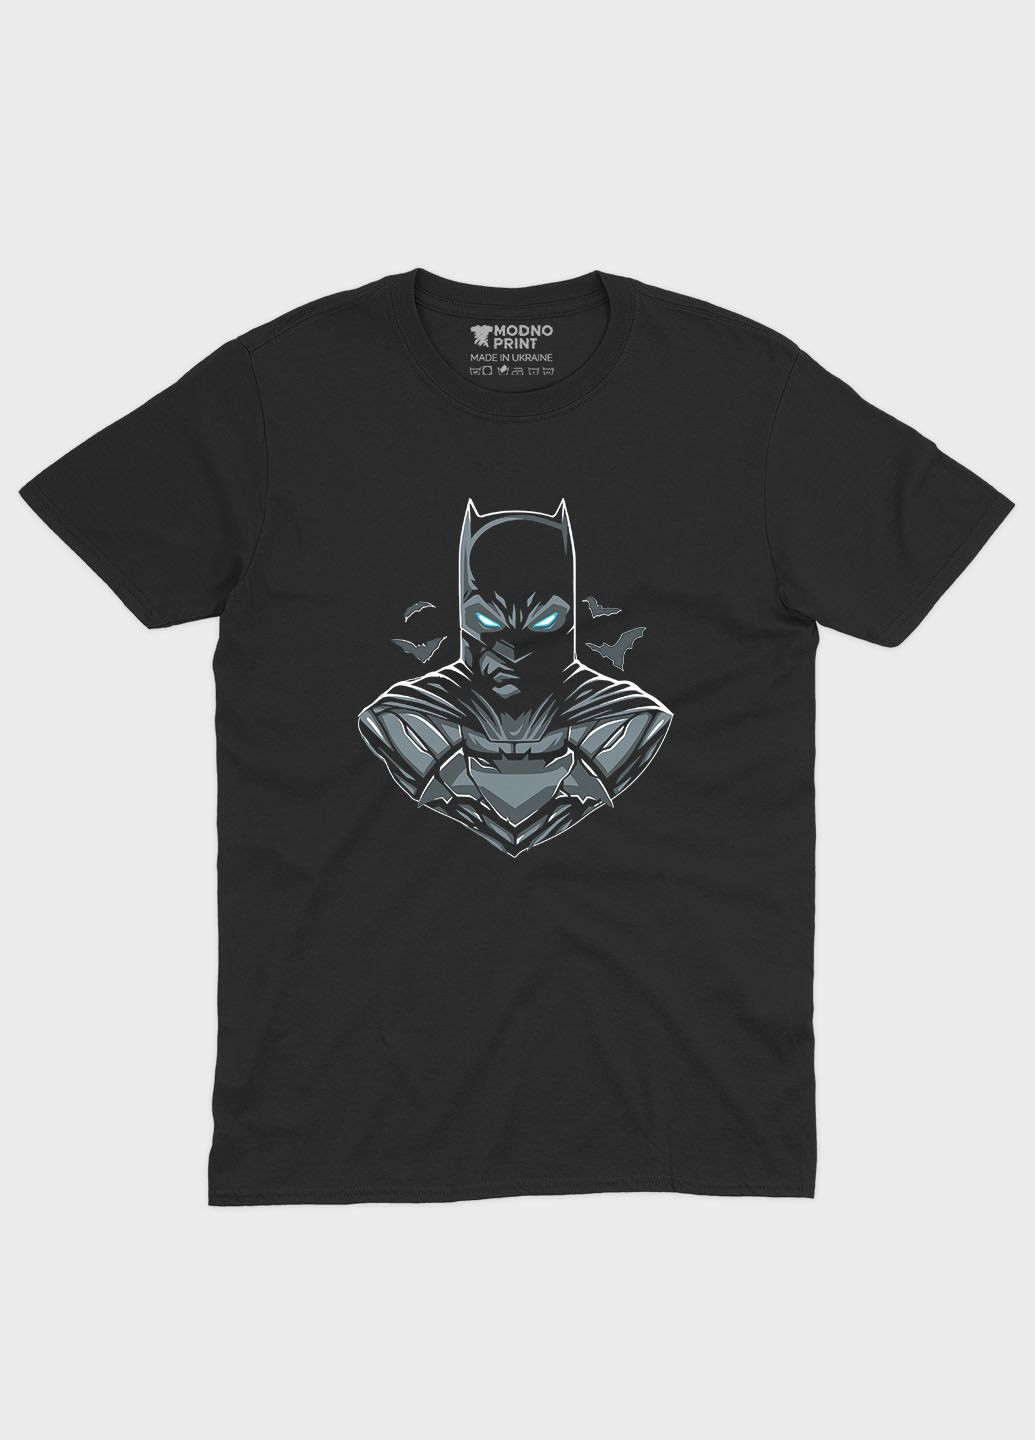 Чорна чоловіча футболка з принтом супергероя - бетмен (ts001-1-bl-006-003-045) Modno